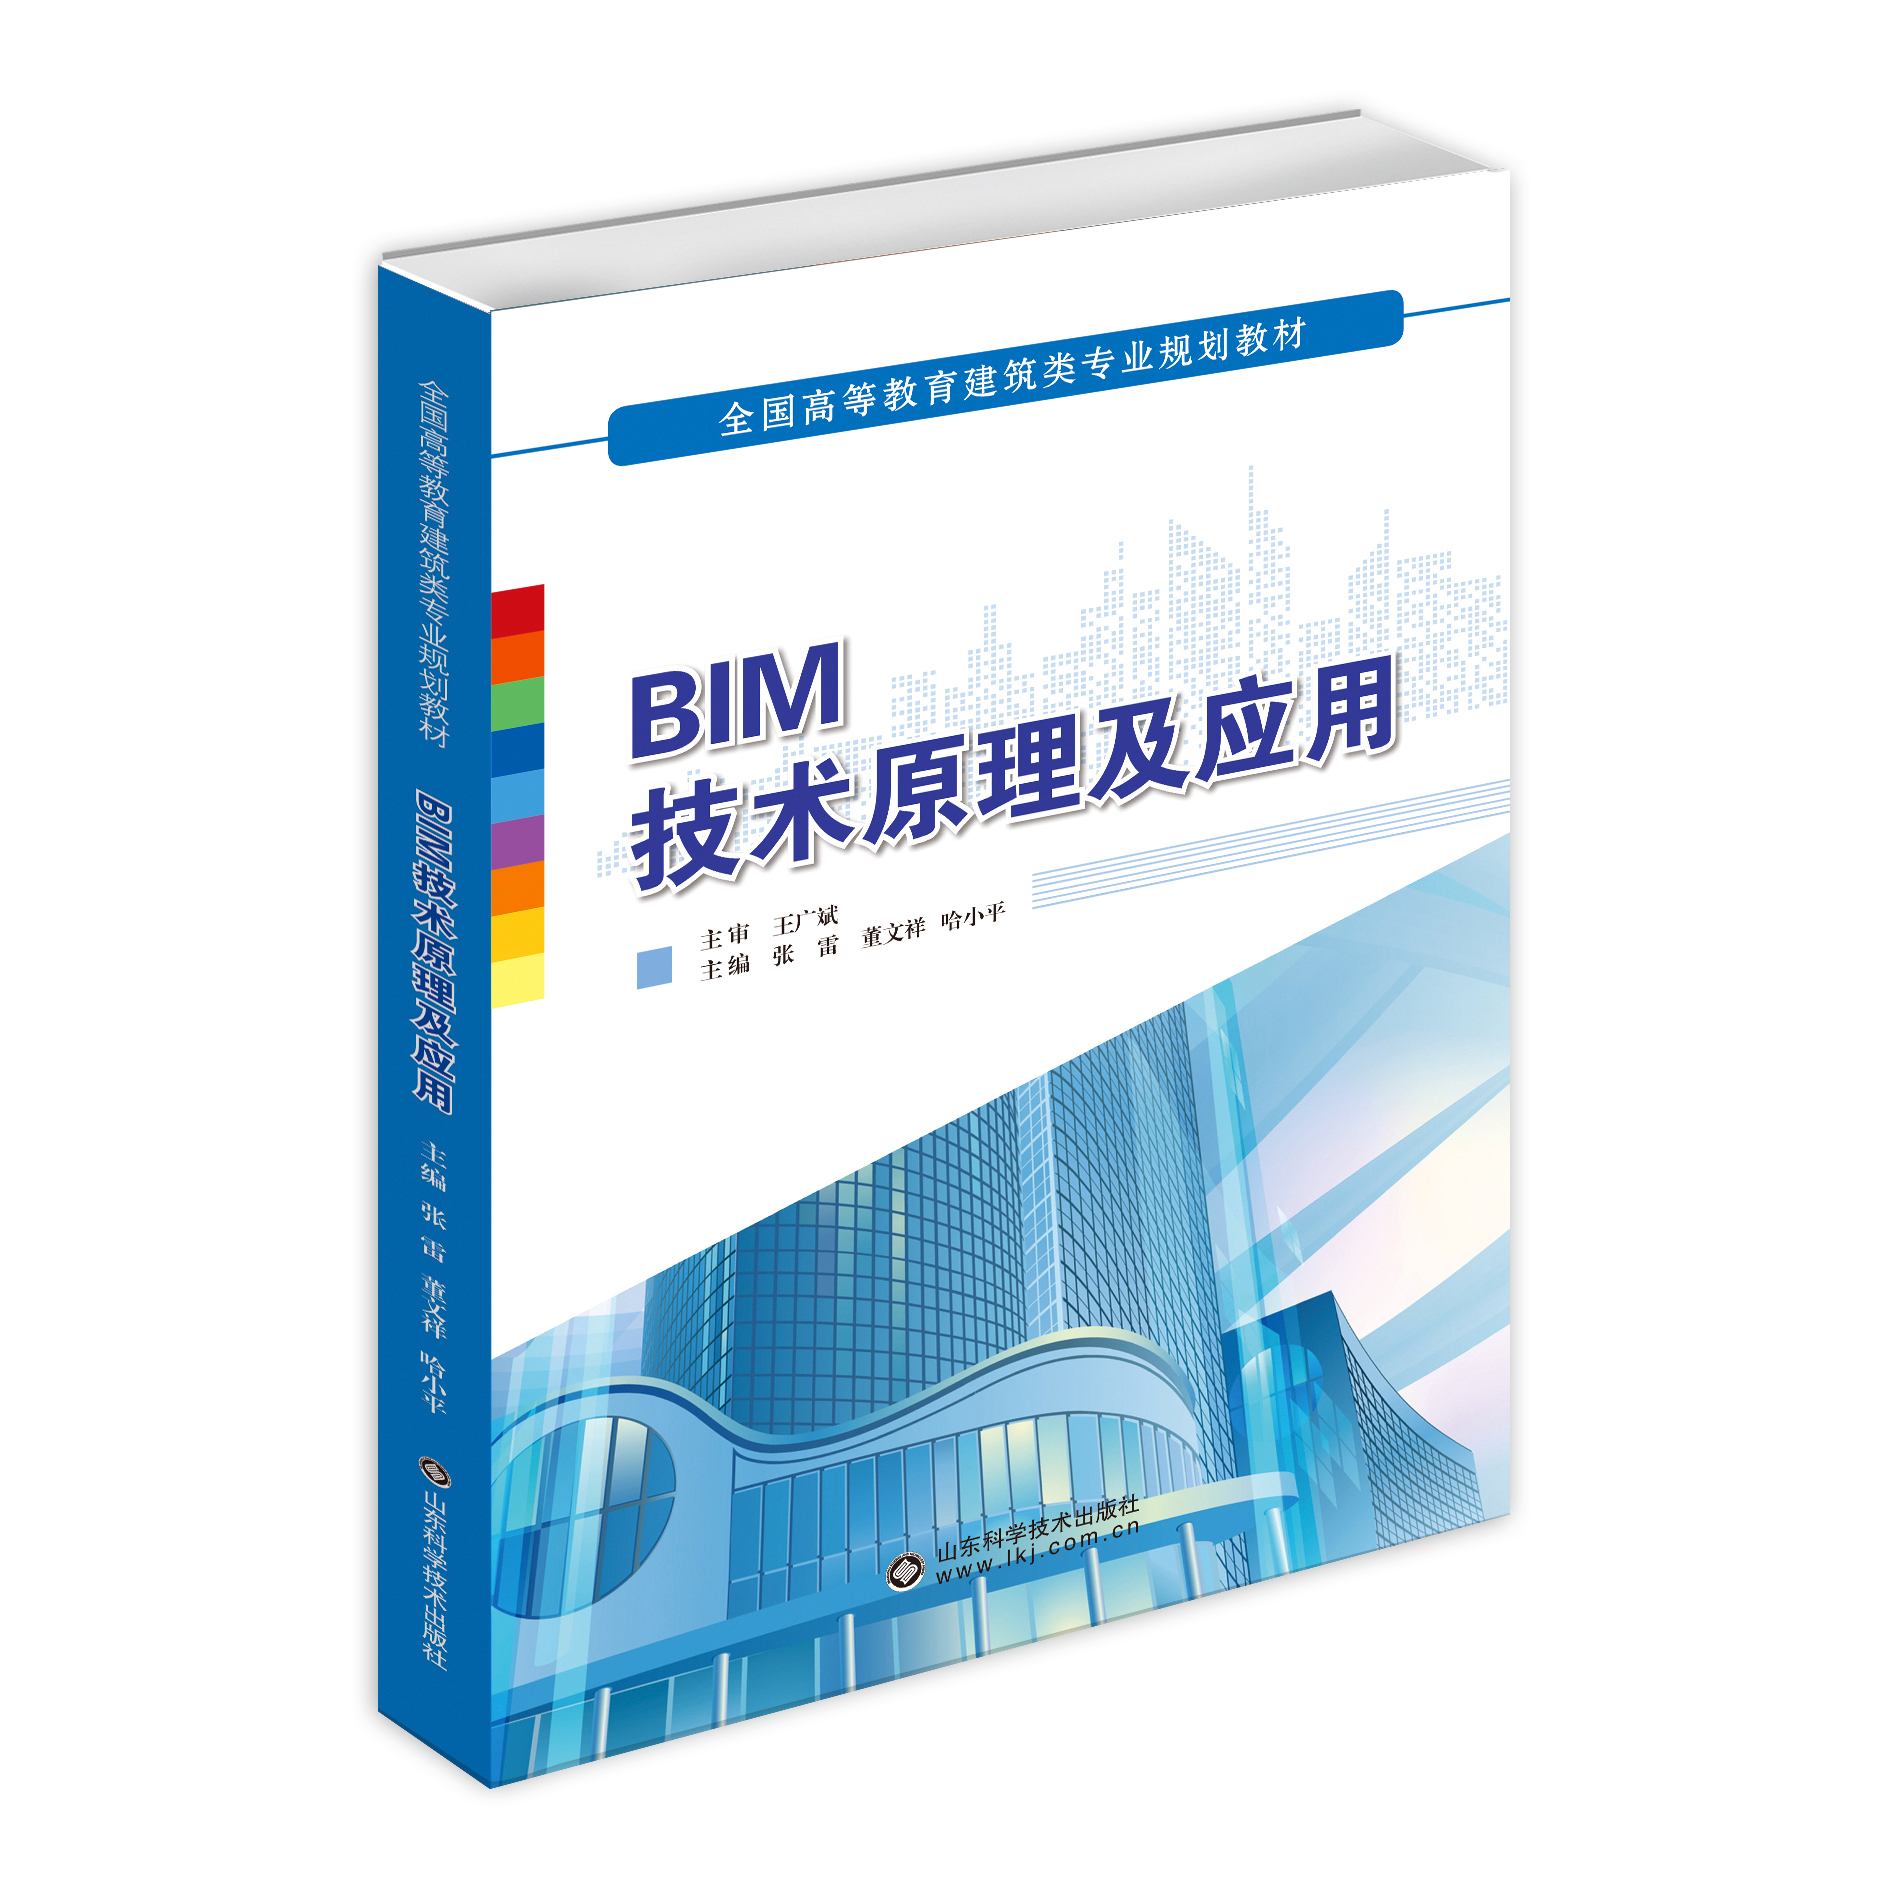 BIM技术原理及应用